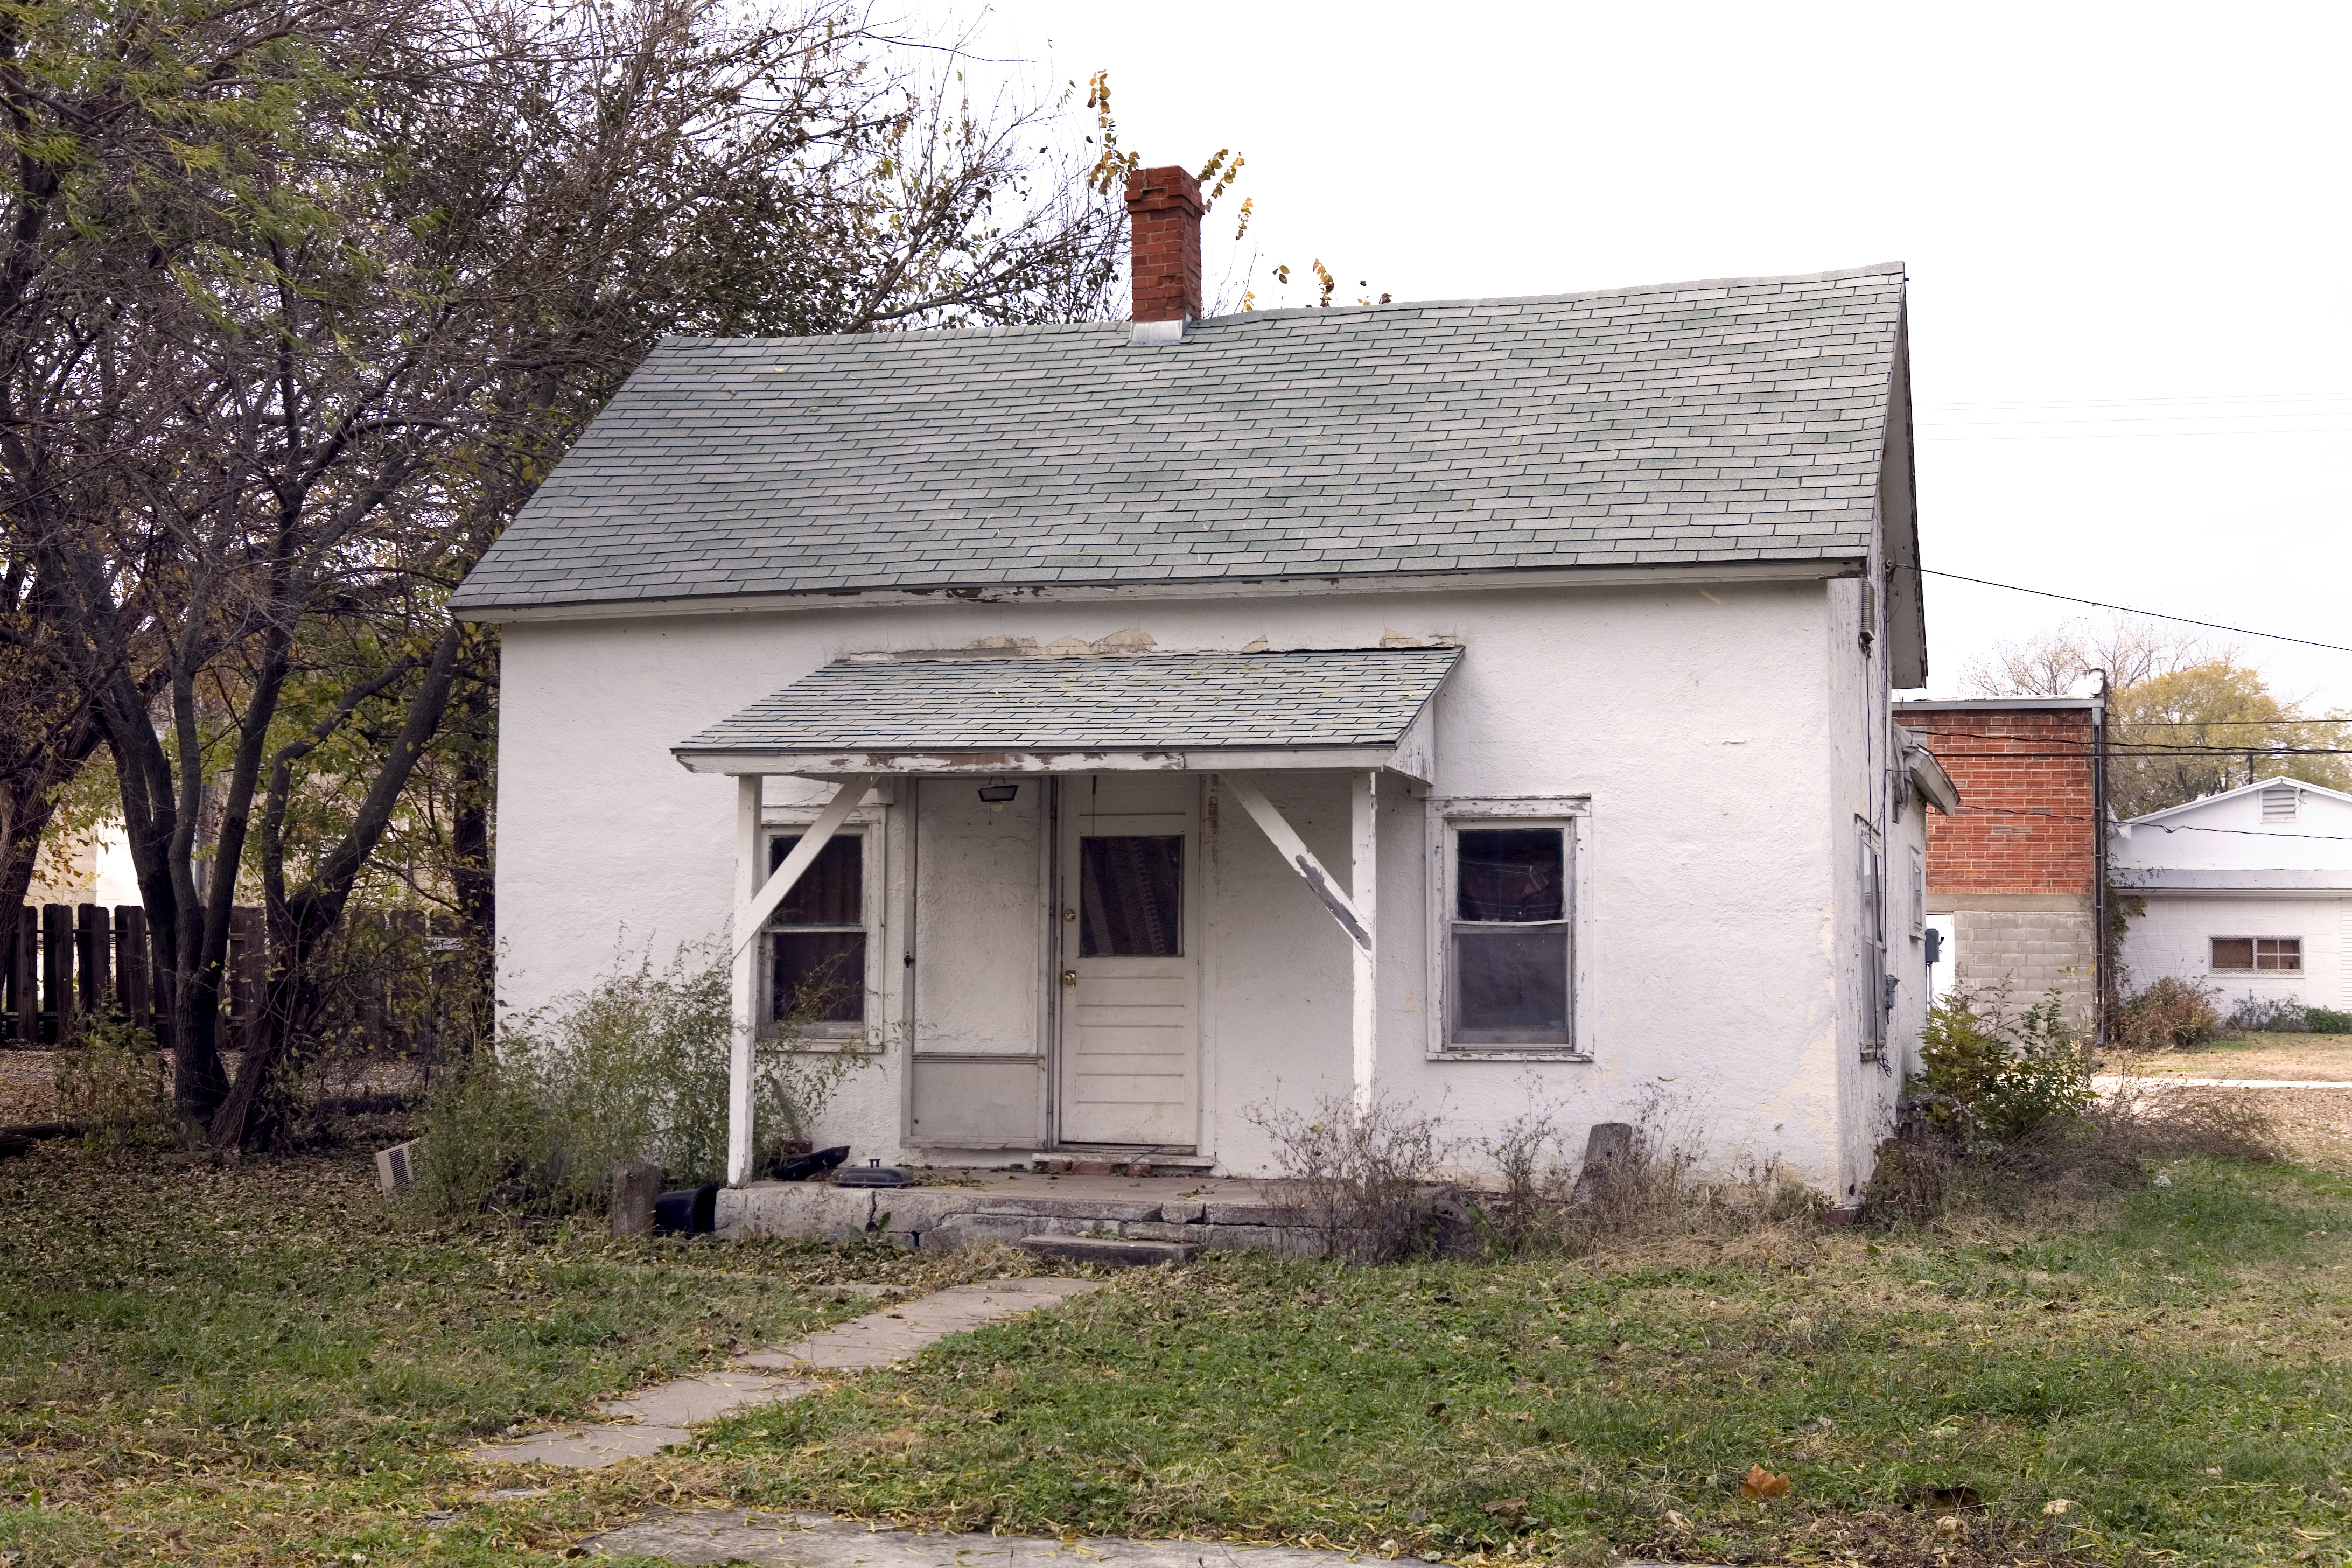 Petite maison de l'Amérique rurale | Source : Getty Images